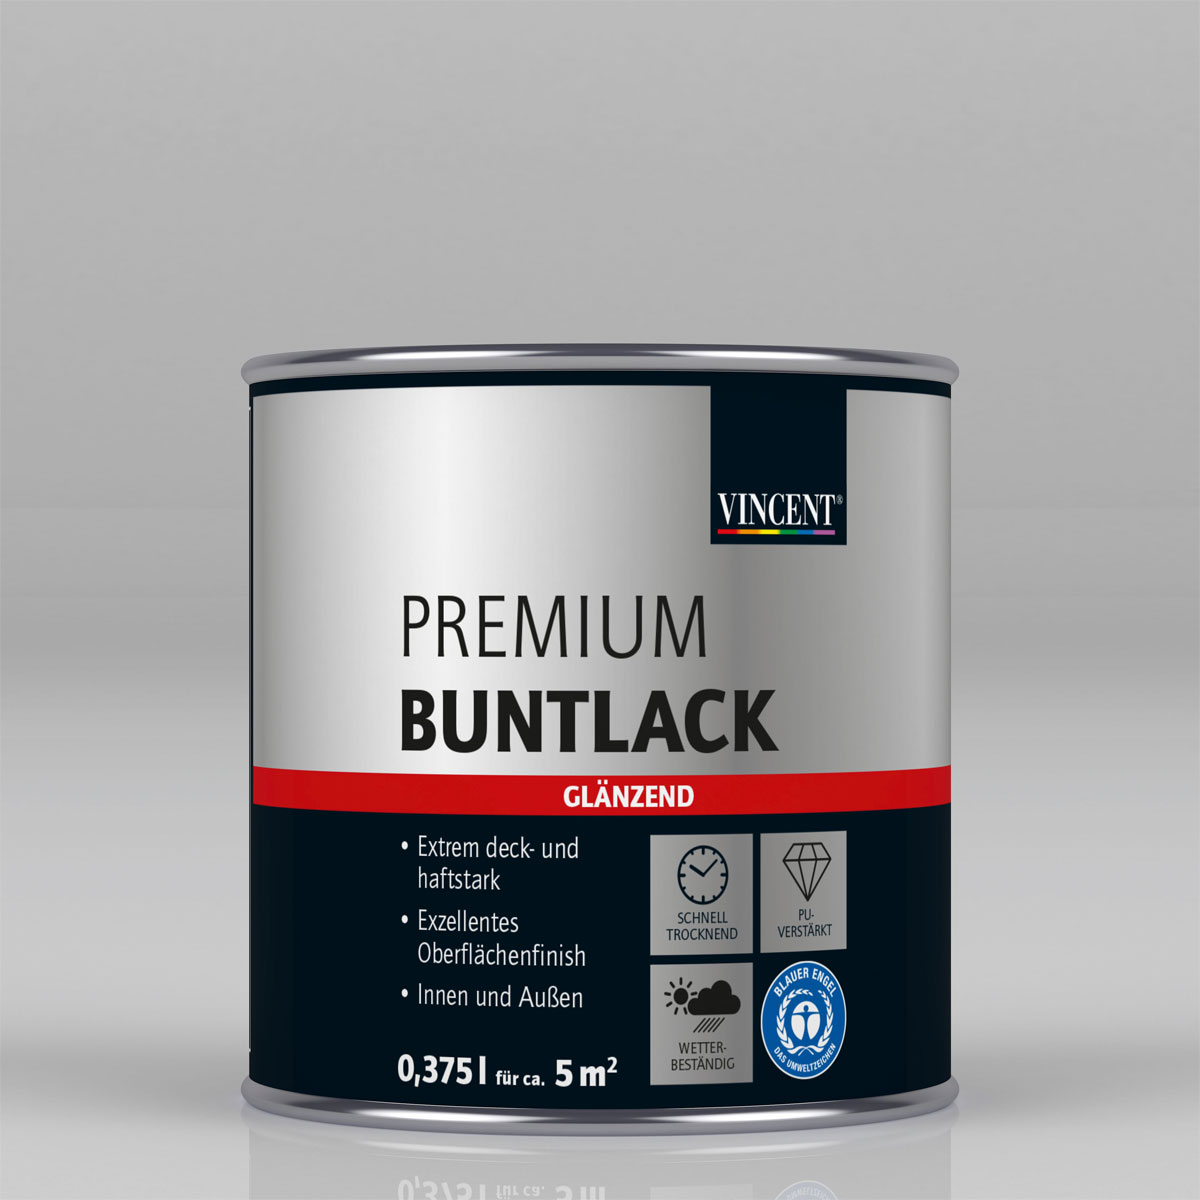 Premium Buntlack „Pastellgrün“ glänzend, 375 ml